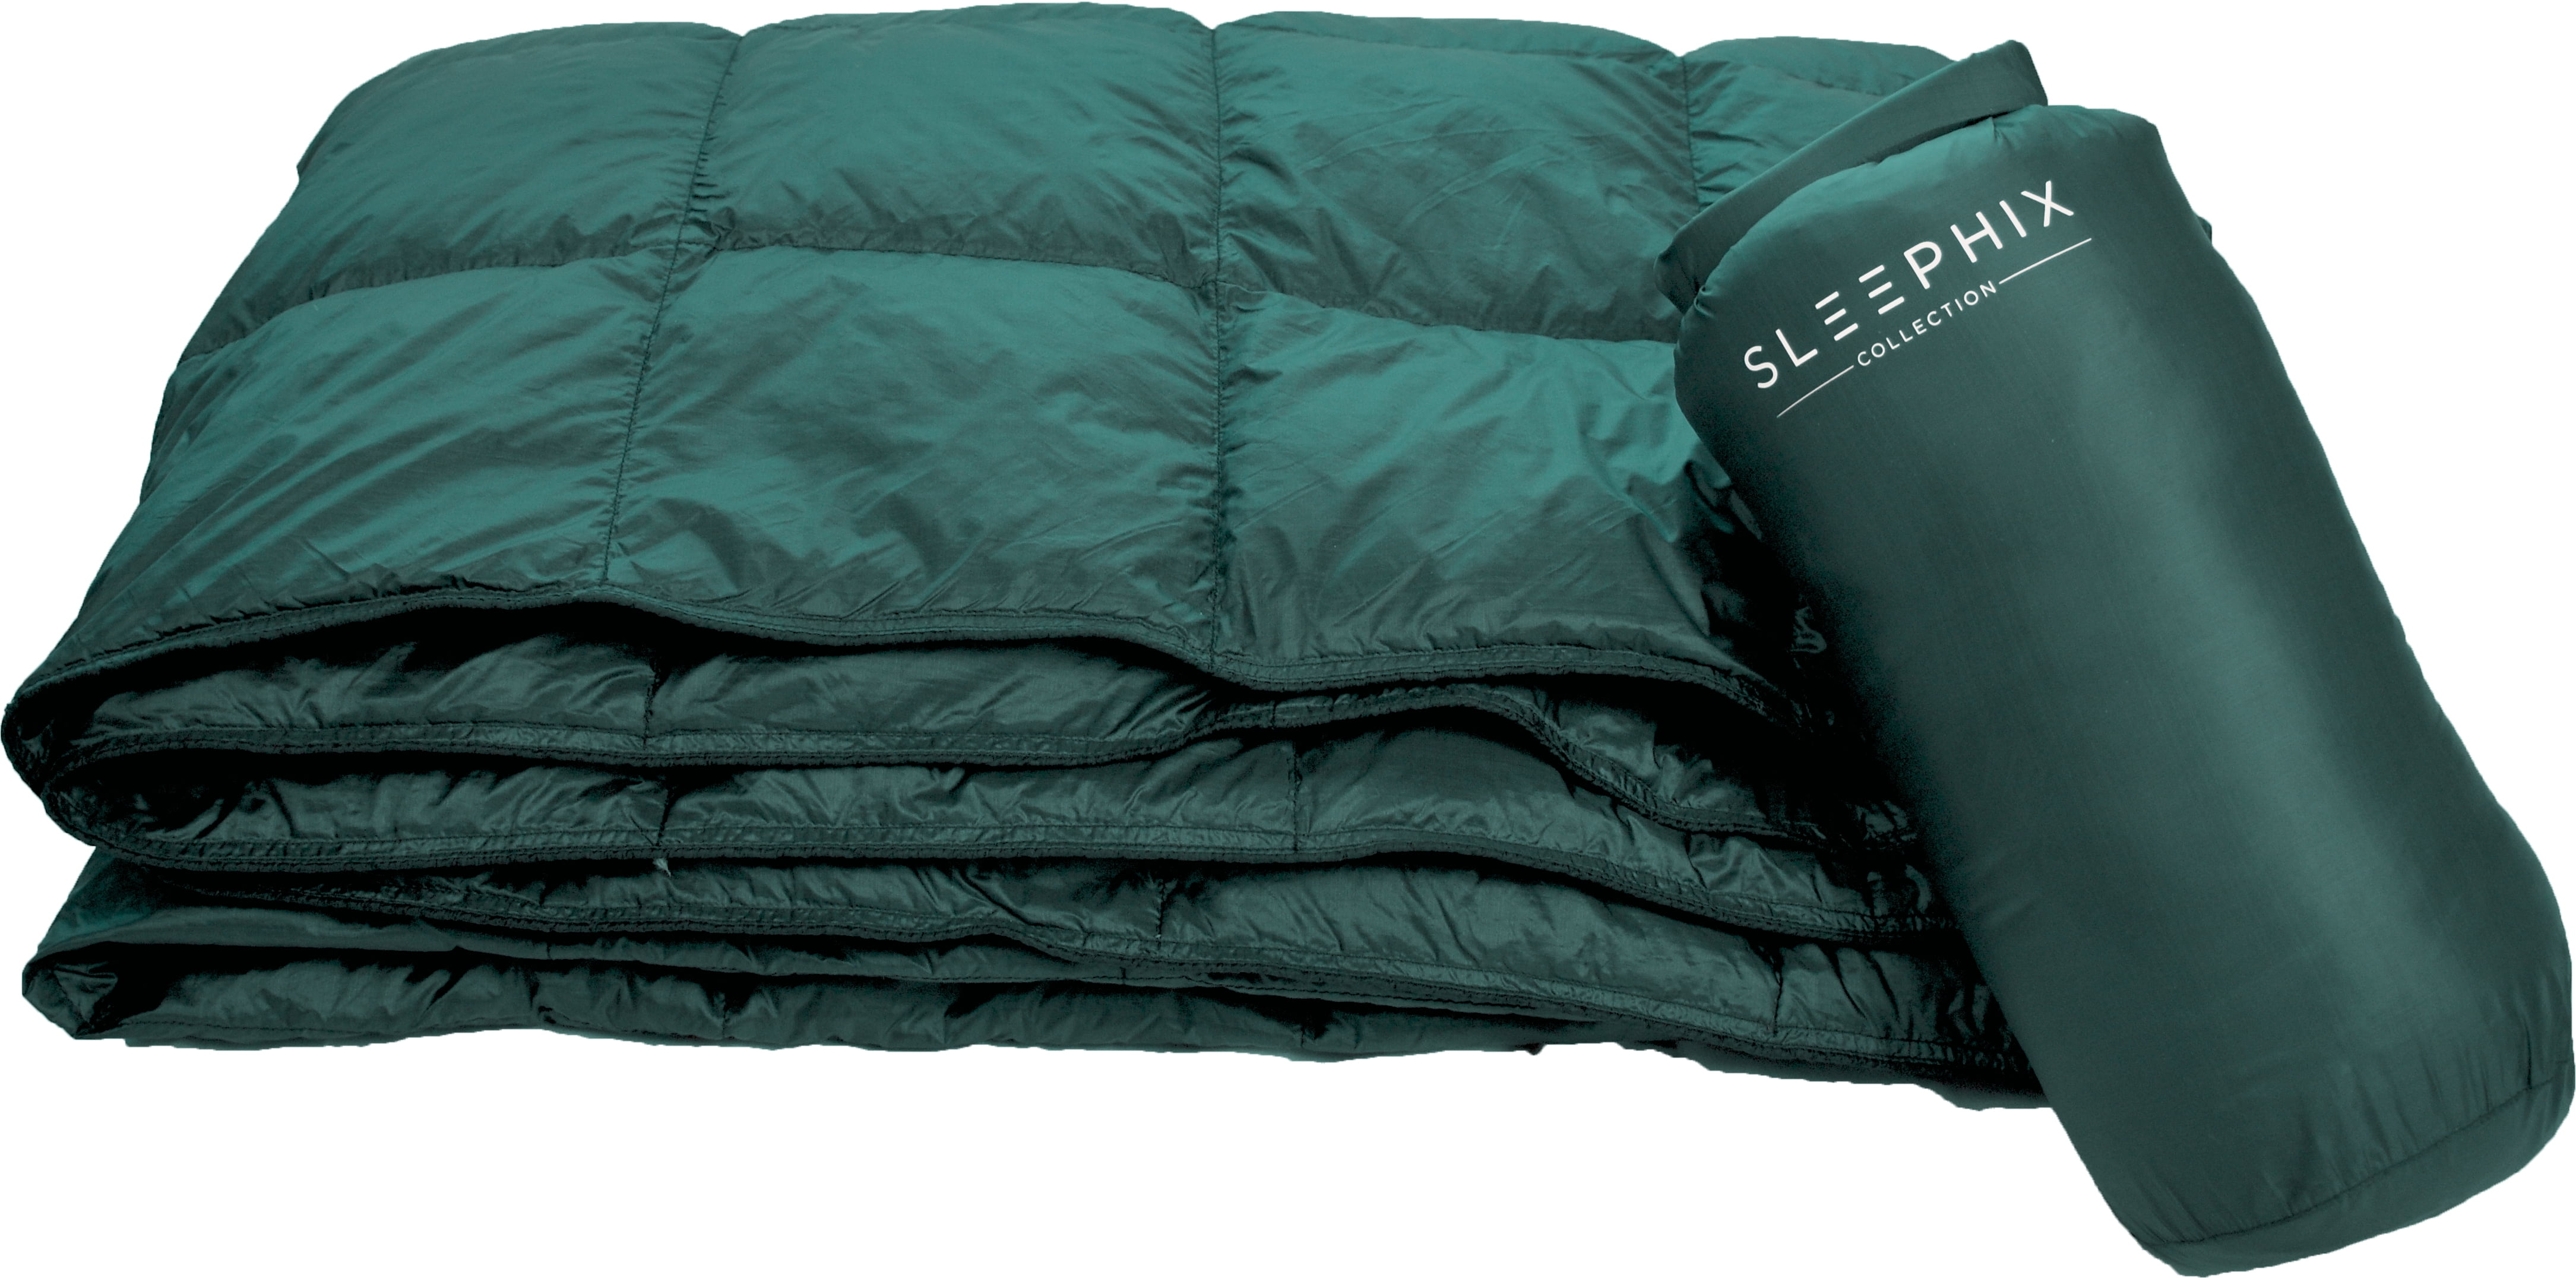 Terrasse und Heimnutzung Wasserabweisend Ideal für Camping Segeln Backpacking SLEEPHIX Daunen Outdoor Camping Decke Nylon Hülle mit Daunenfüllung Flugzeugreisen Füllkraft: 650